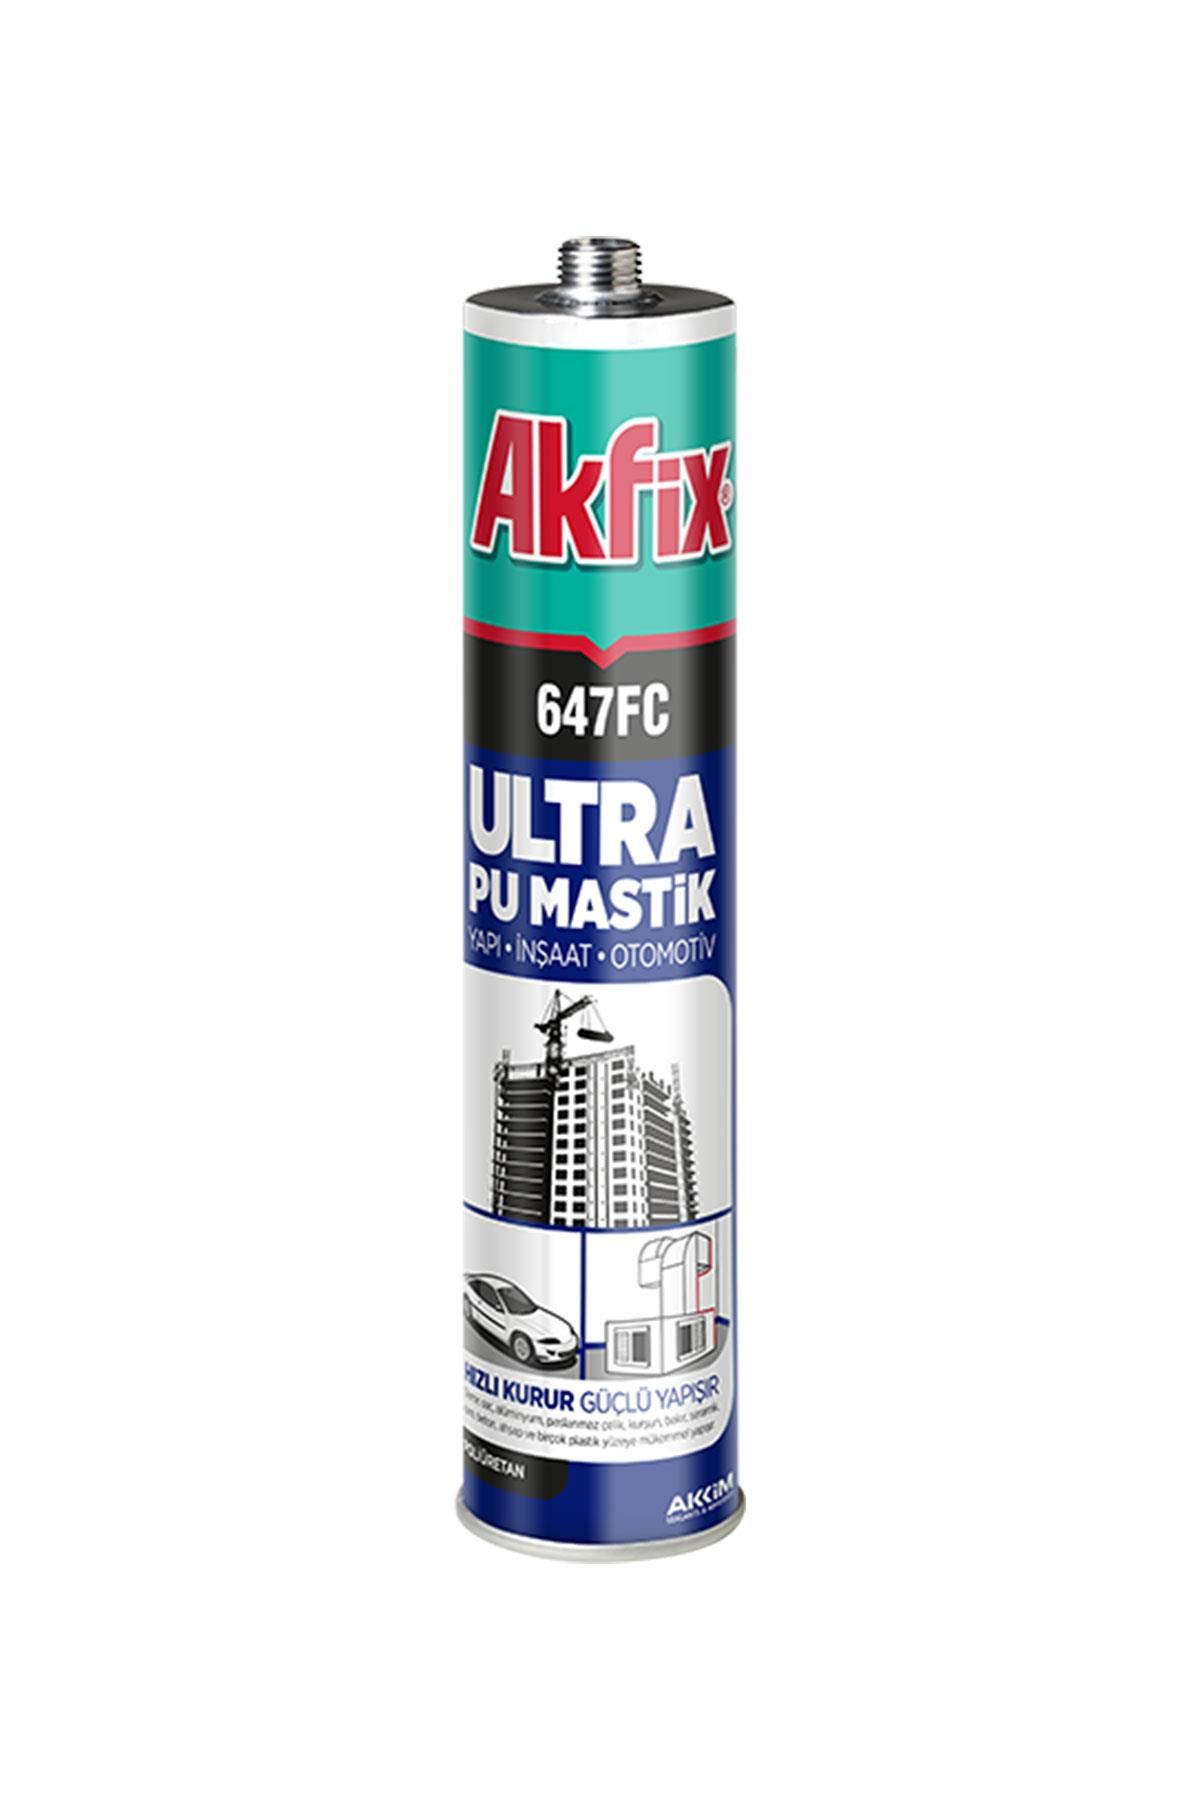 Akfix 647FC Ultra Pu Mastik 280 ml. Gri